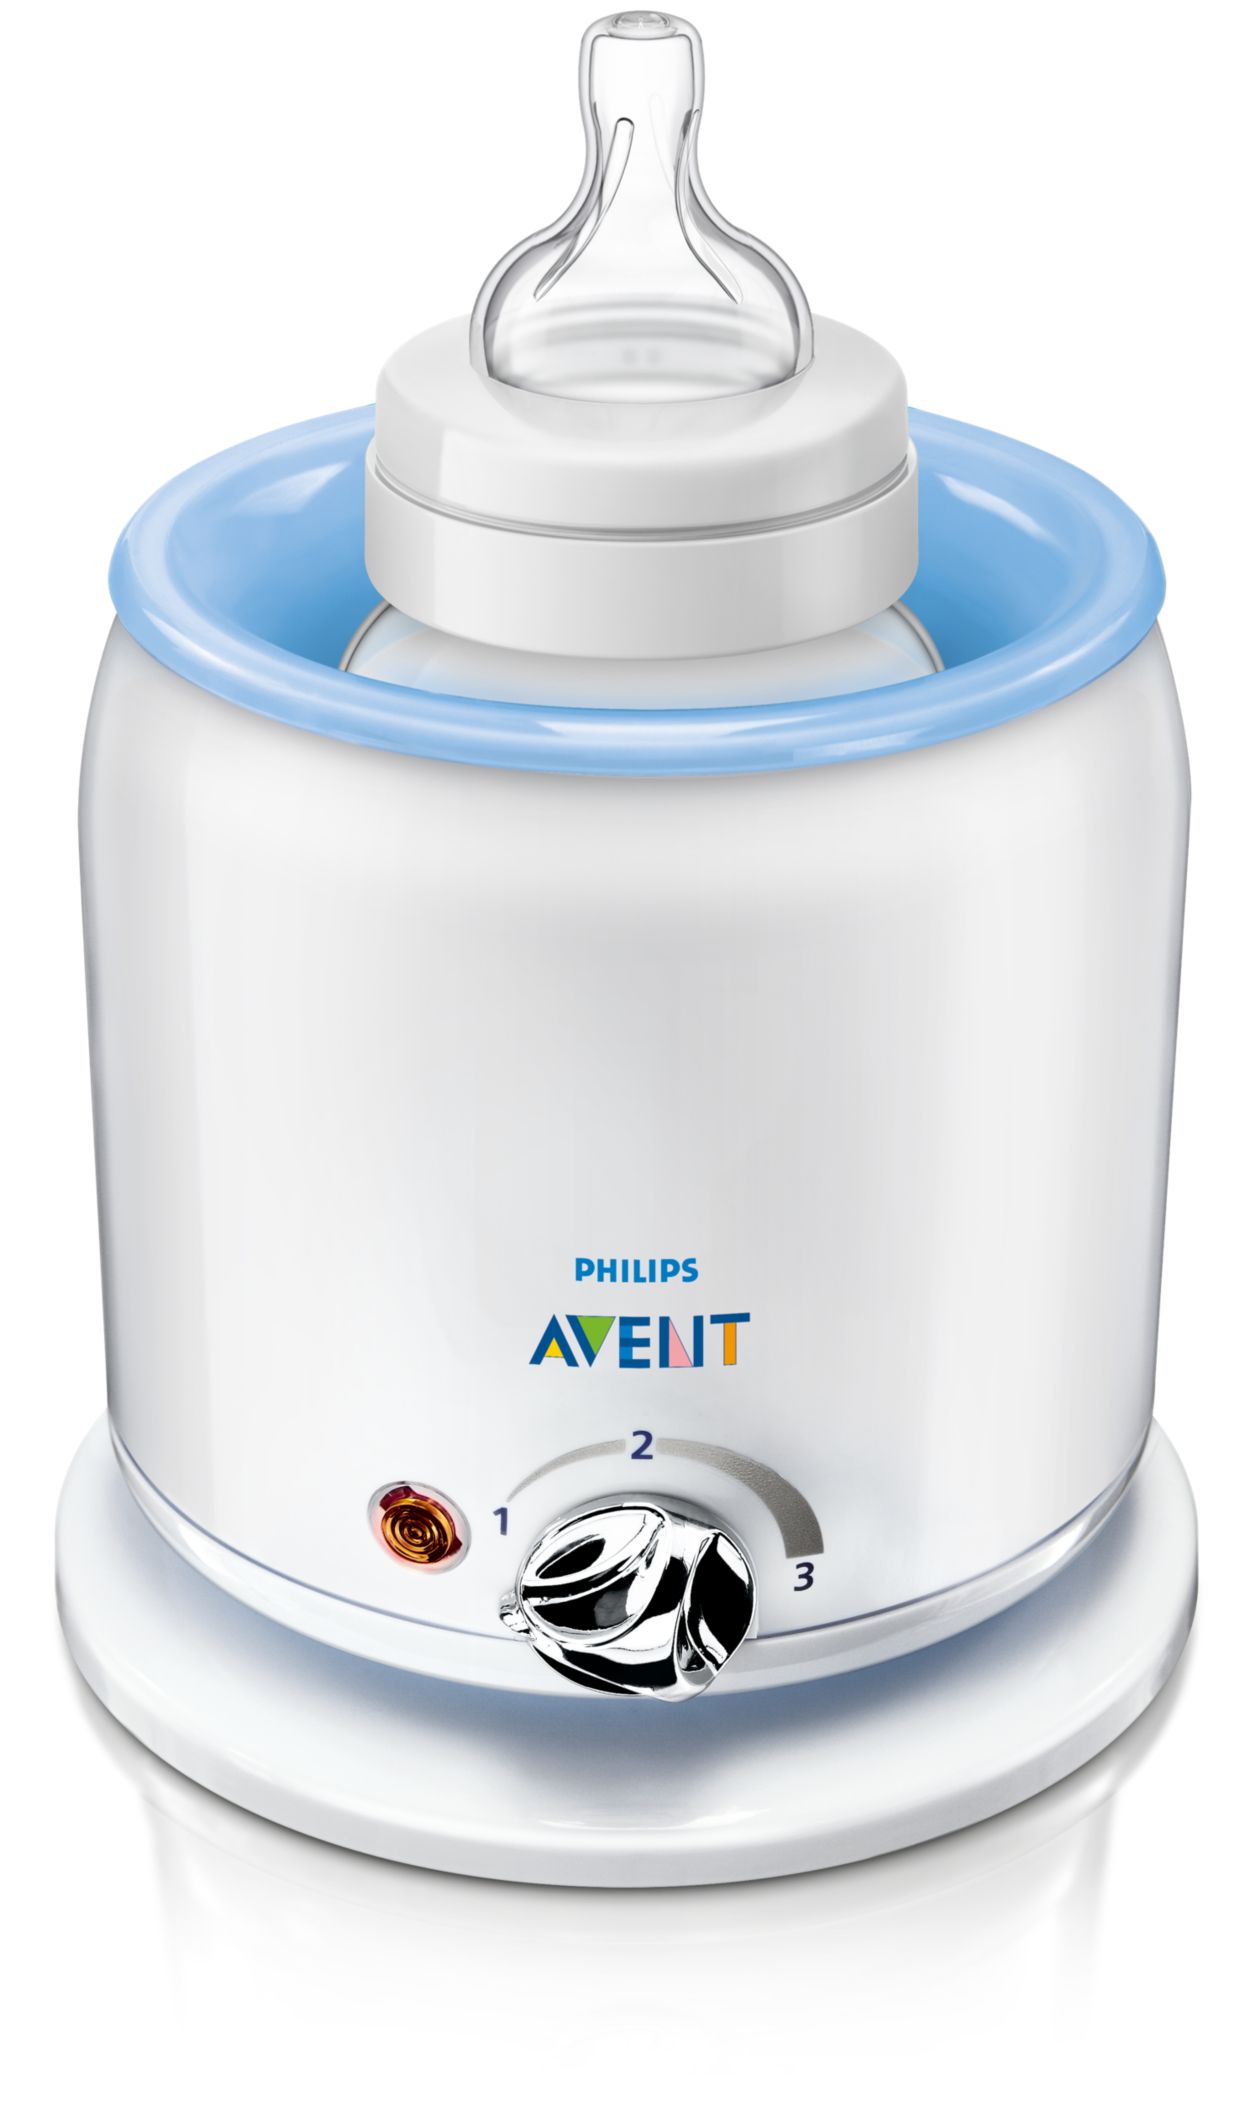 Philips Avent Chauffe-biberon - Chauffe en 3 minutes - Dégivrage silencieux  - Maintient le lait au chaud - Facile à utiliser - Compatible avec tous